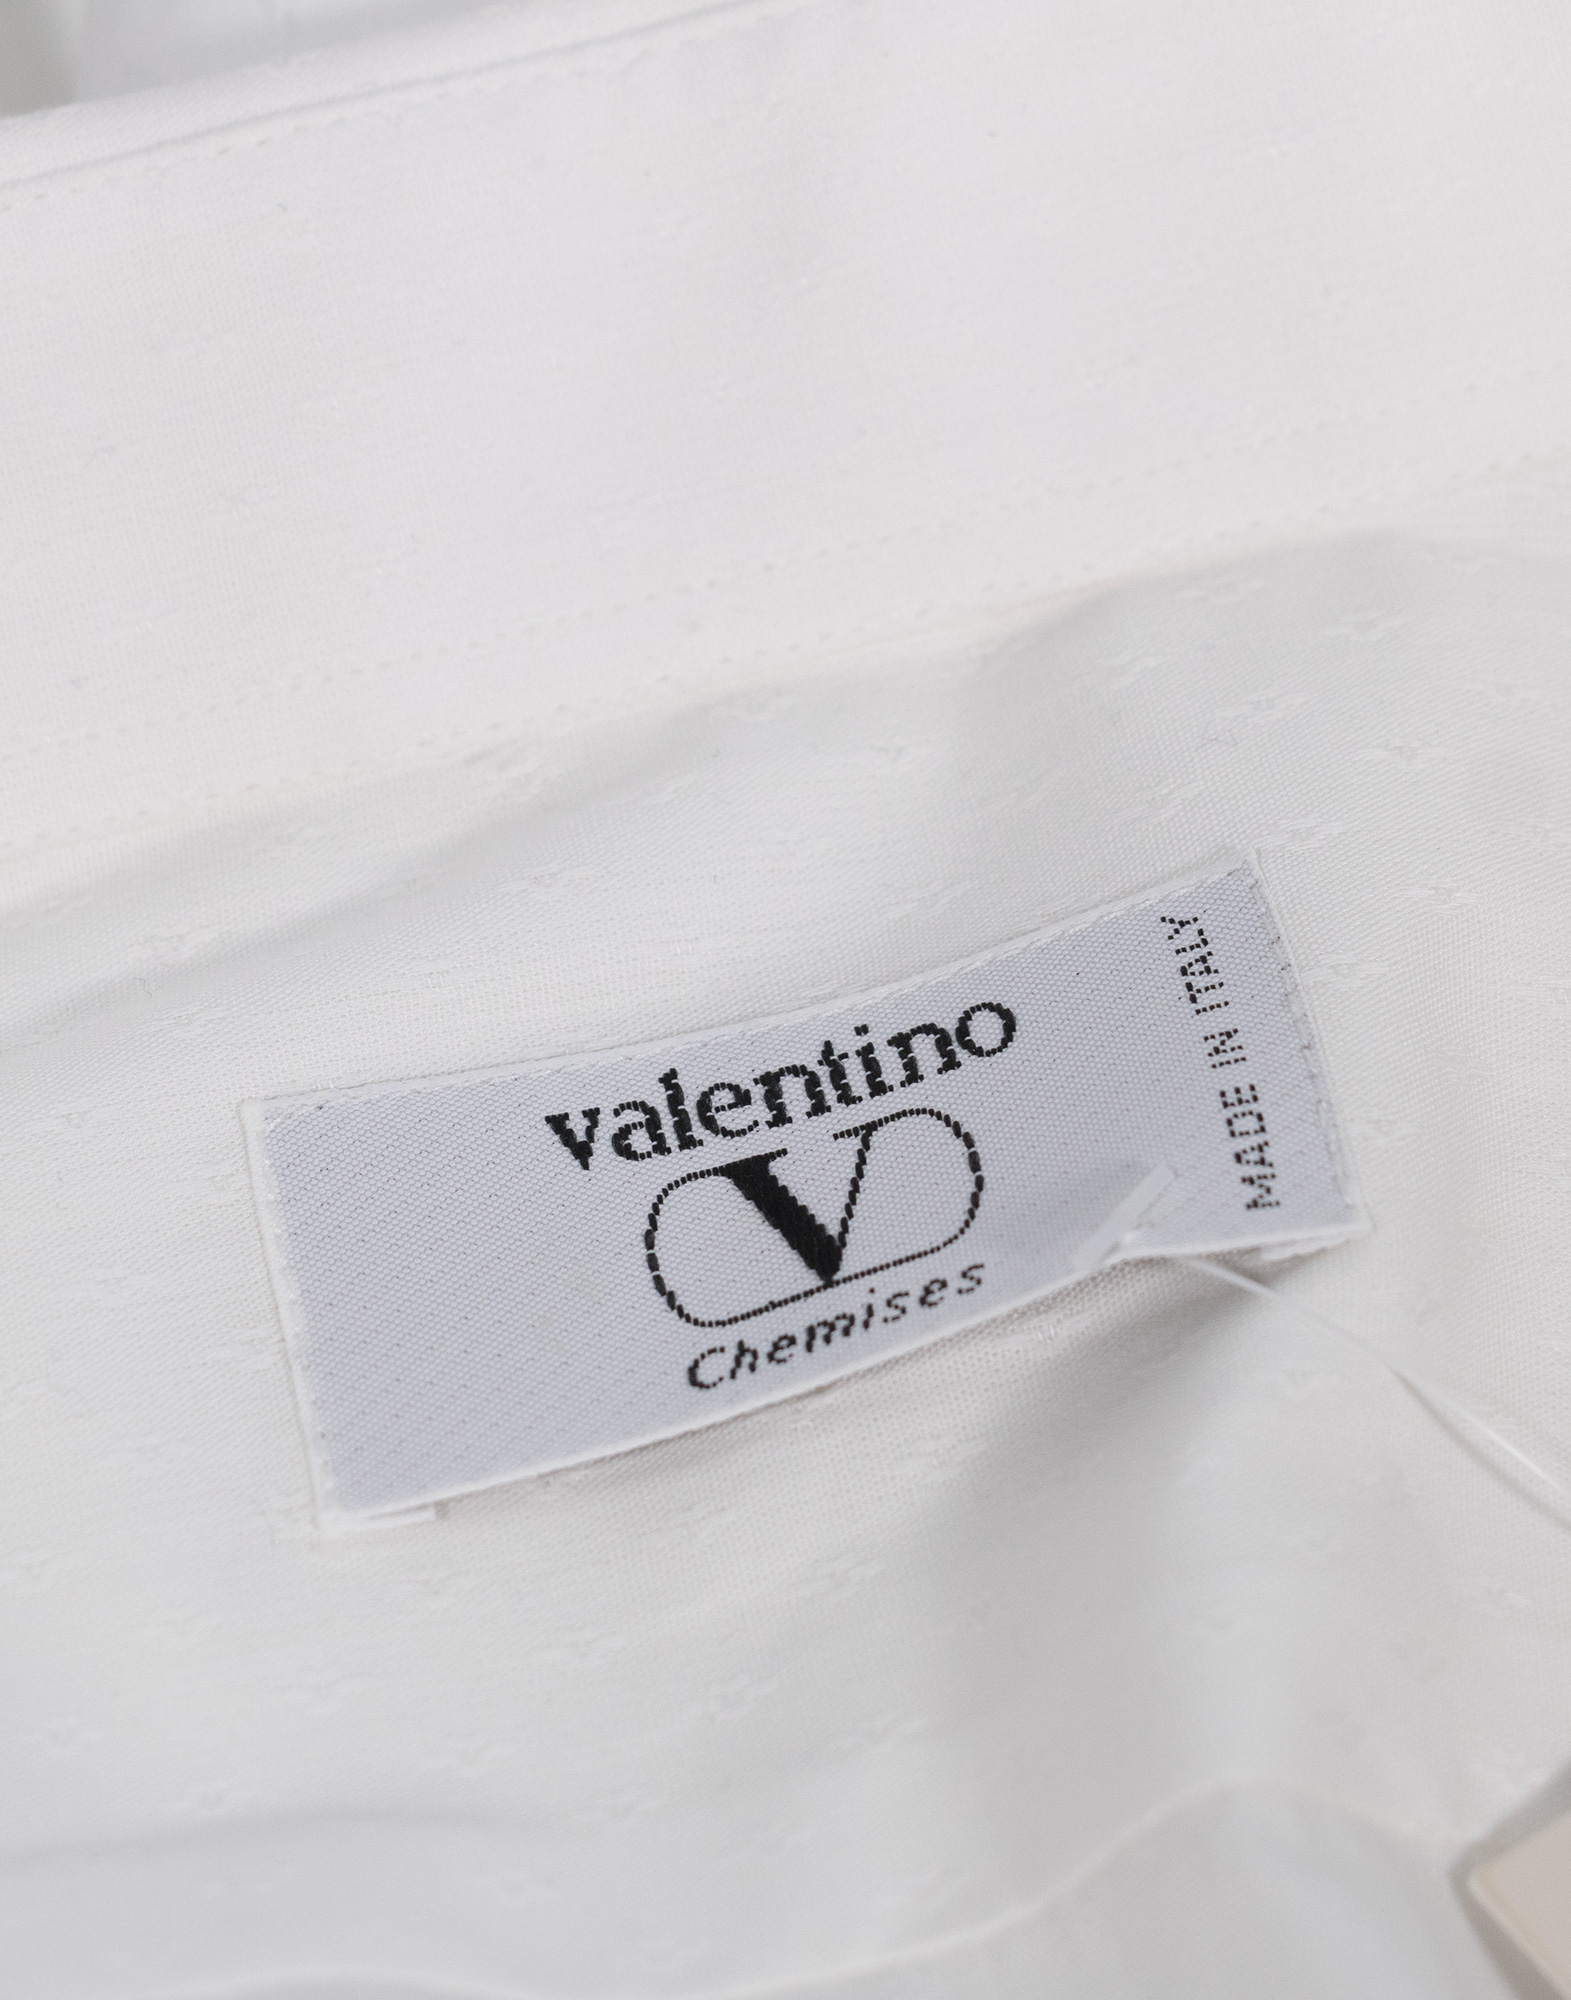 Valentino - White cotton shirt